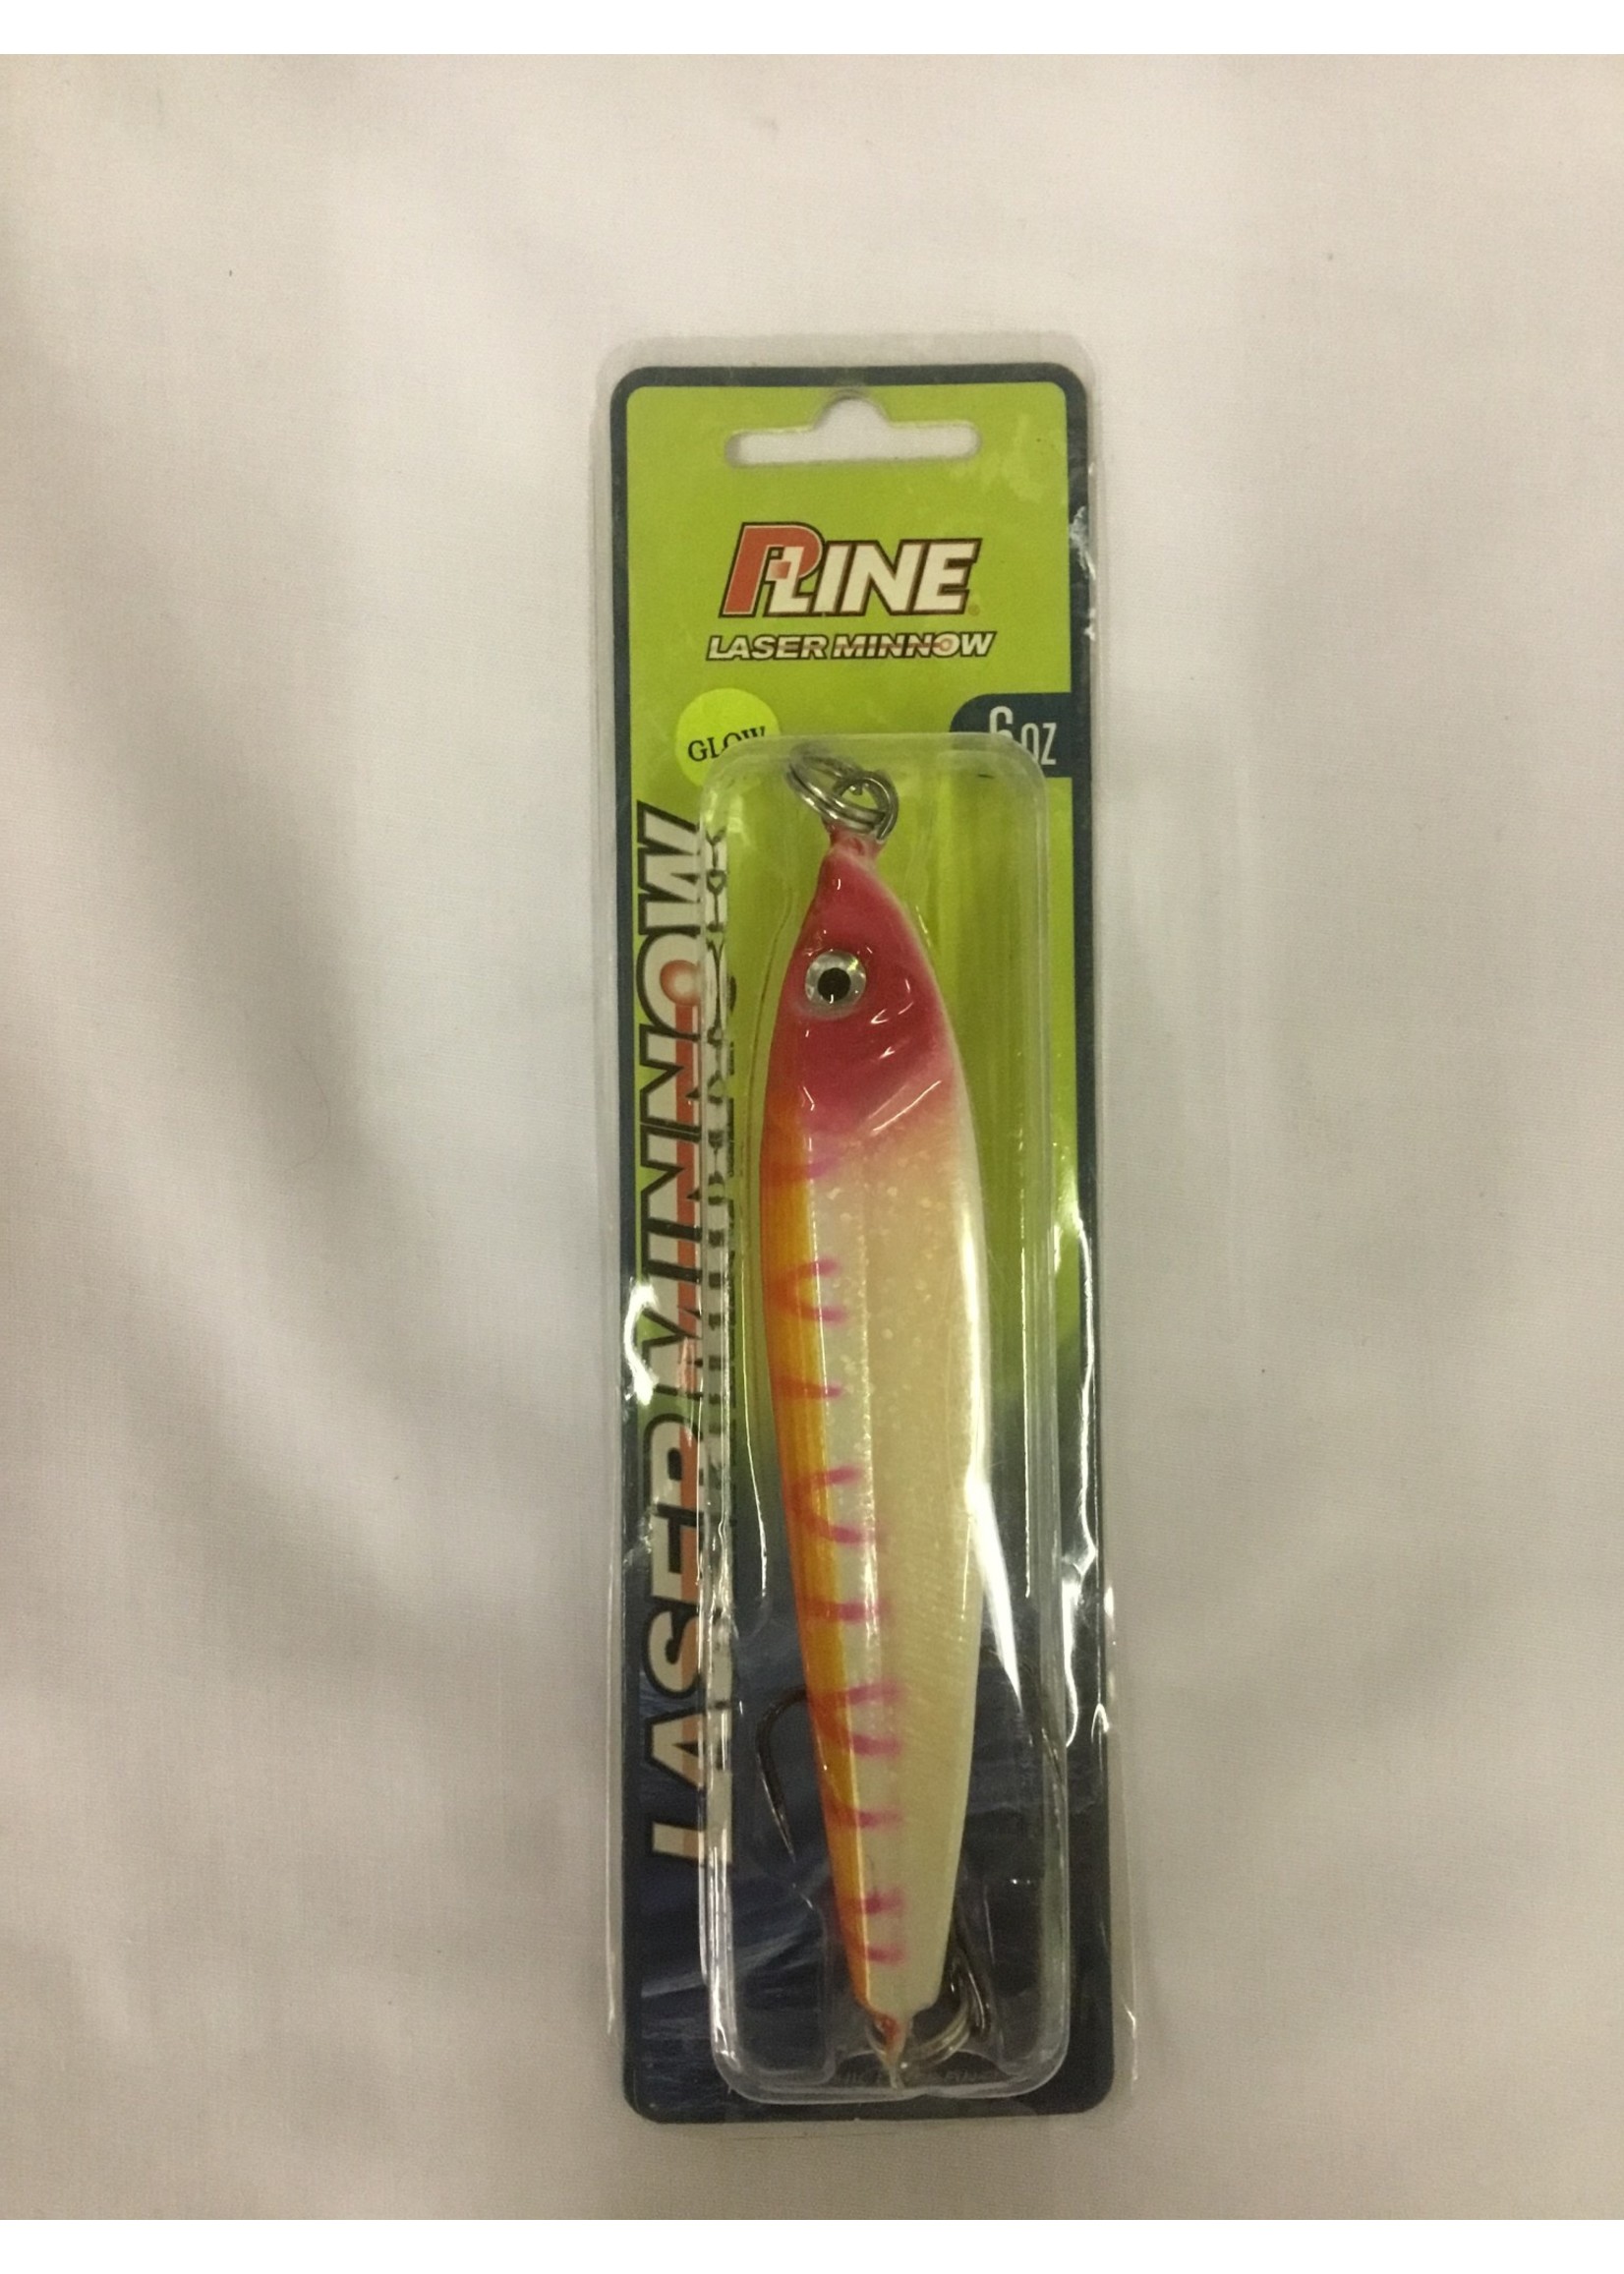 P-LINE P-Line Laser Minnow 6oz